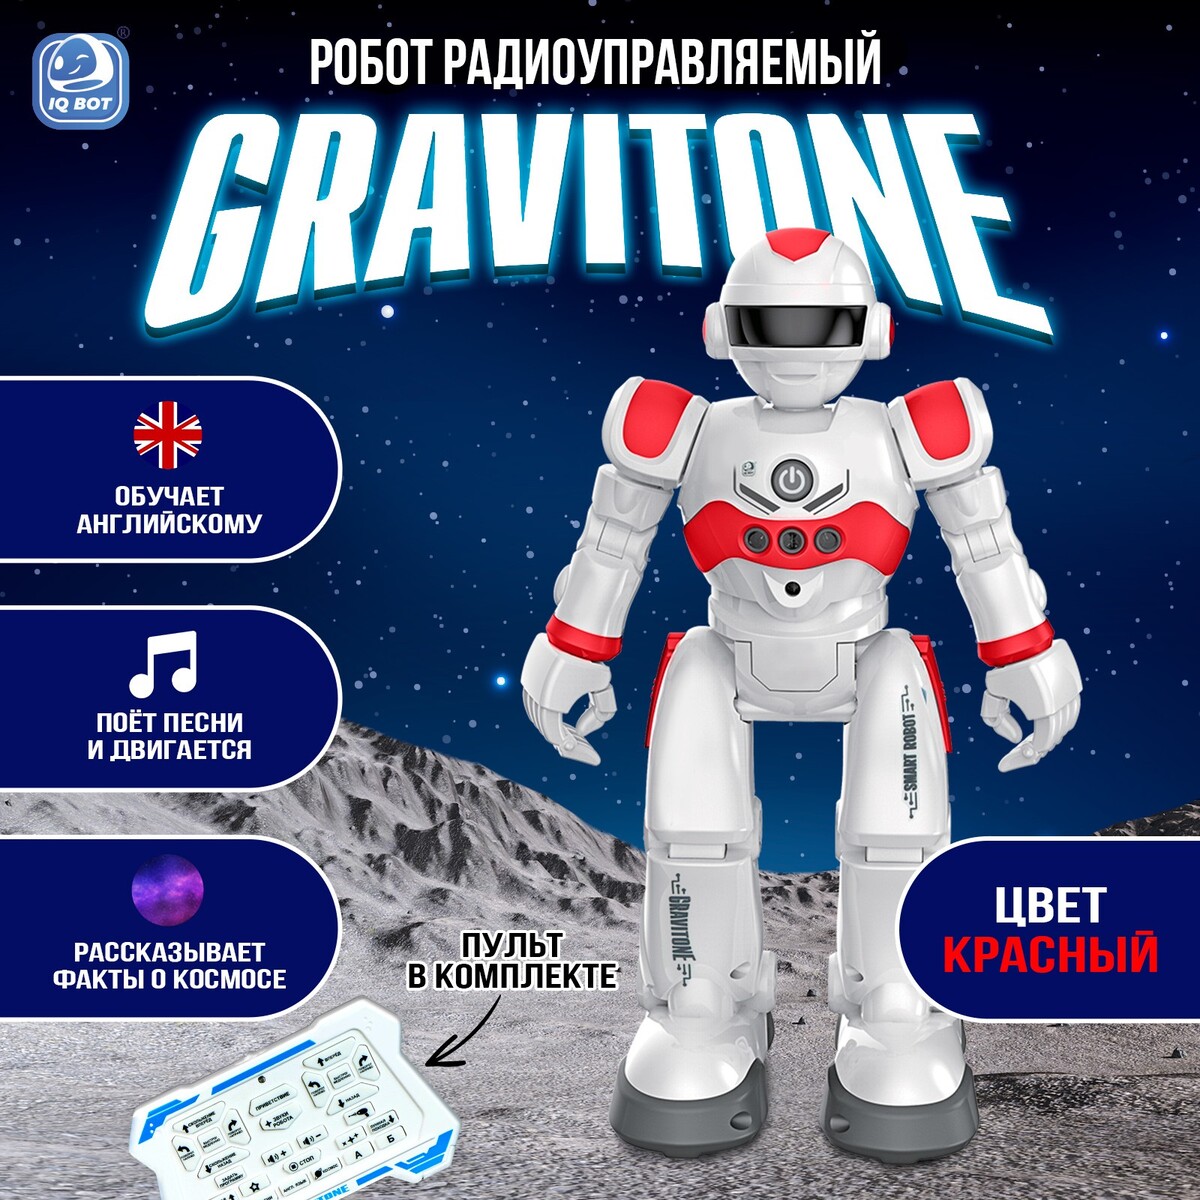 Робот радиоуправляемый iq bot gravitone, русское озвучивание, цвет красный русское правоведение юридическая чума на руси вылечим